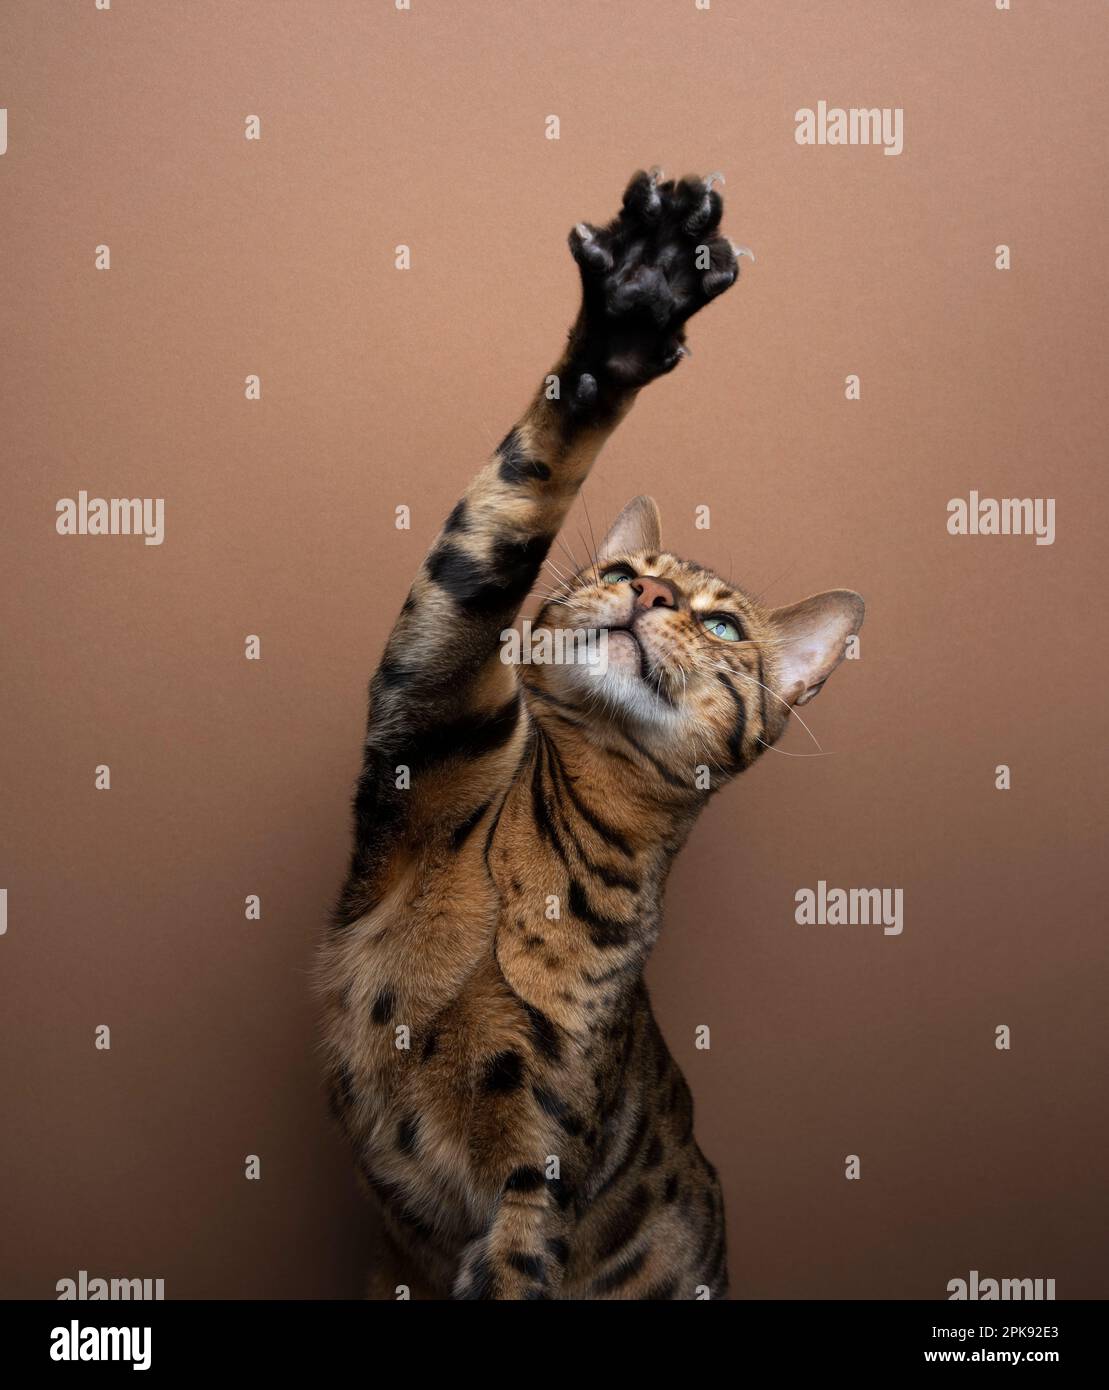 Gioca a gatto bengala completo, alzando la zampa con artigli estesi che guardano su sfondo marrone Foto Stock